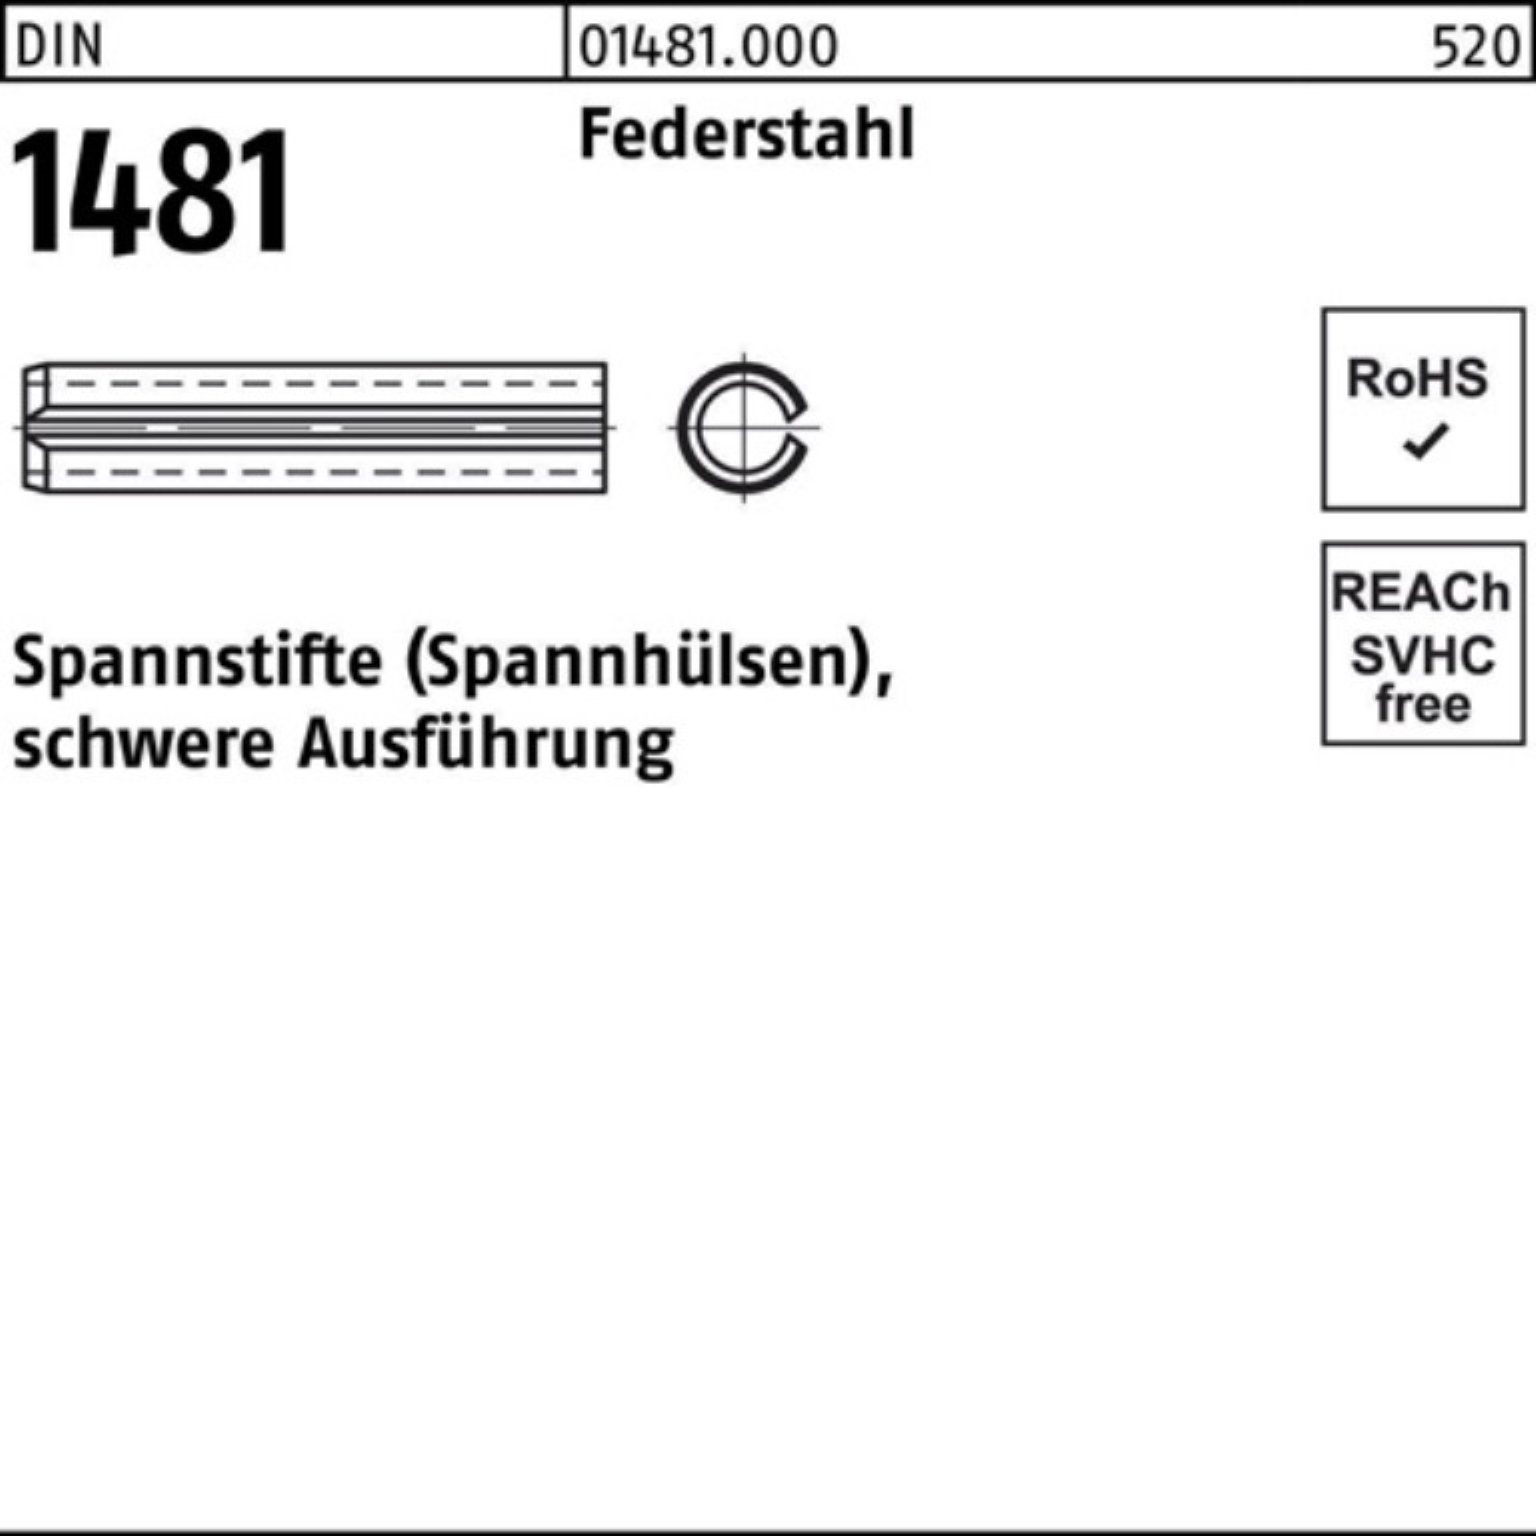 Reyher Spannstift Pack DIN 90 1481 Federstahl Ausführung schwere 10x 5 Spannstift 100er